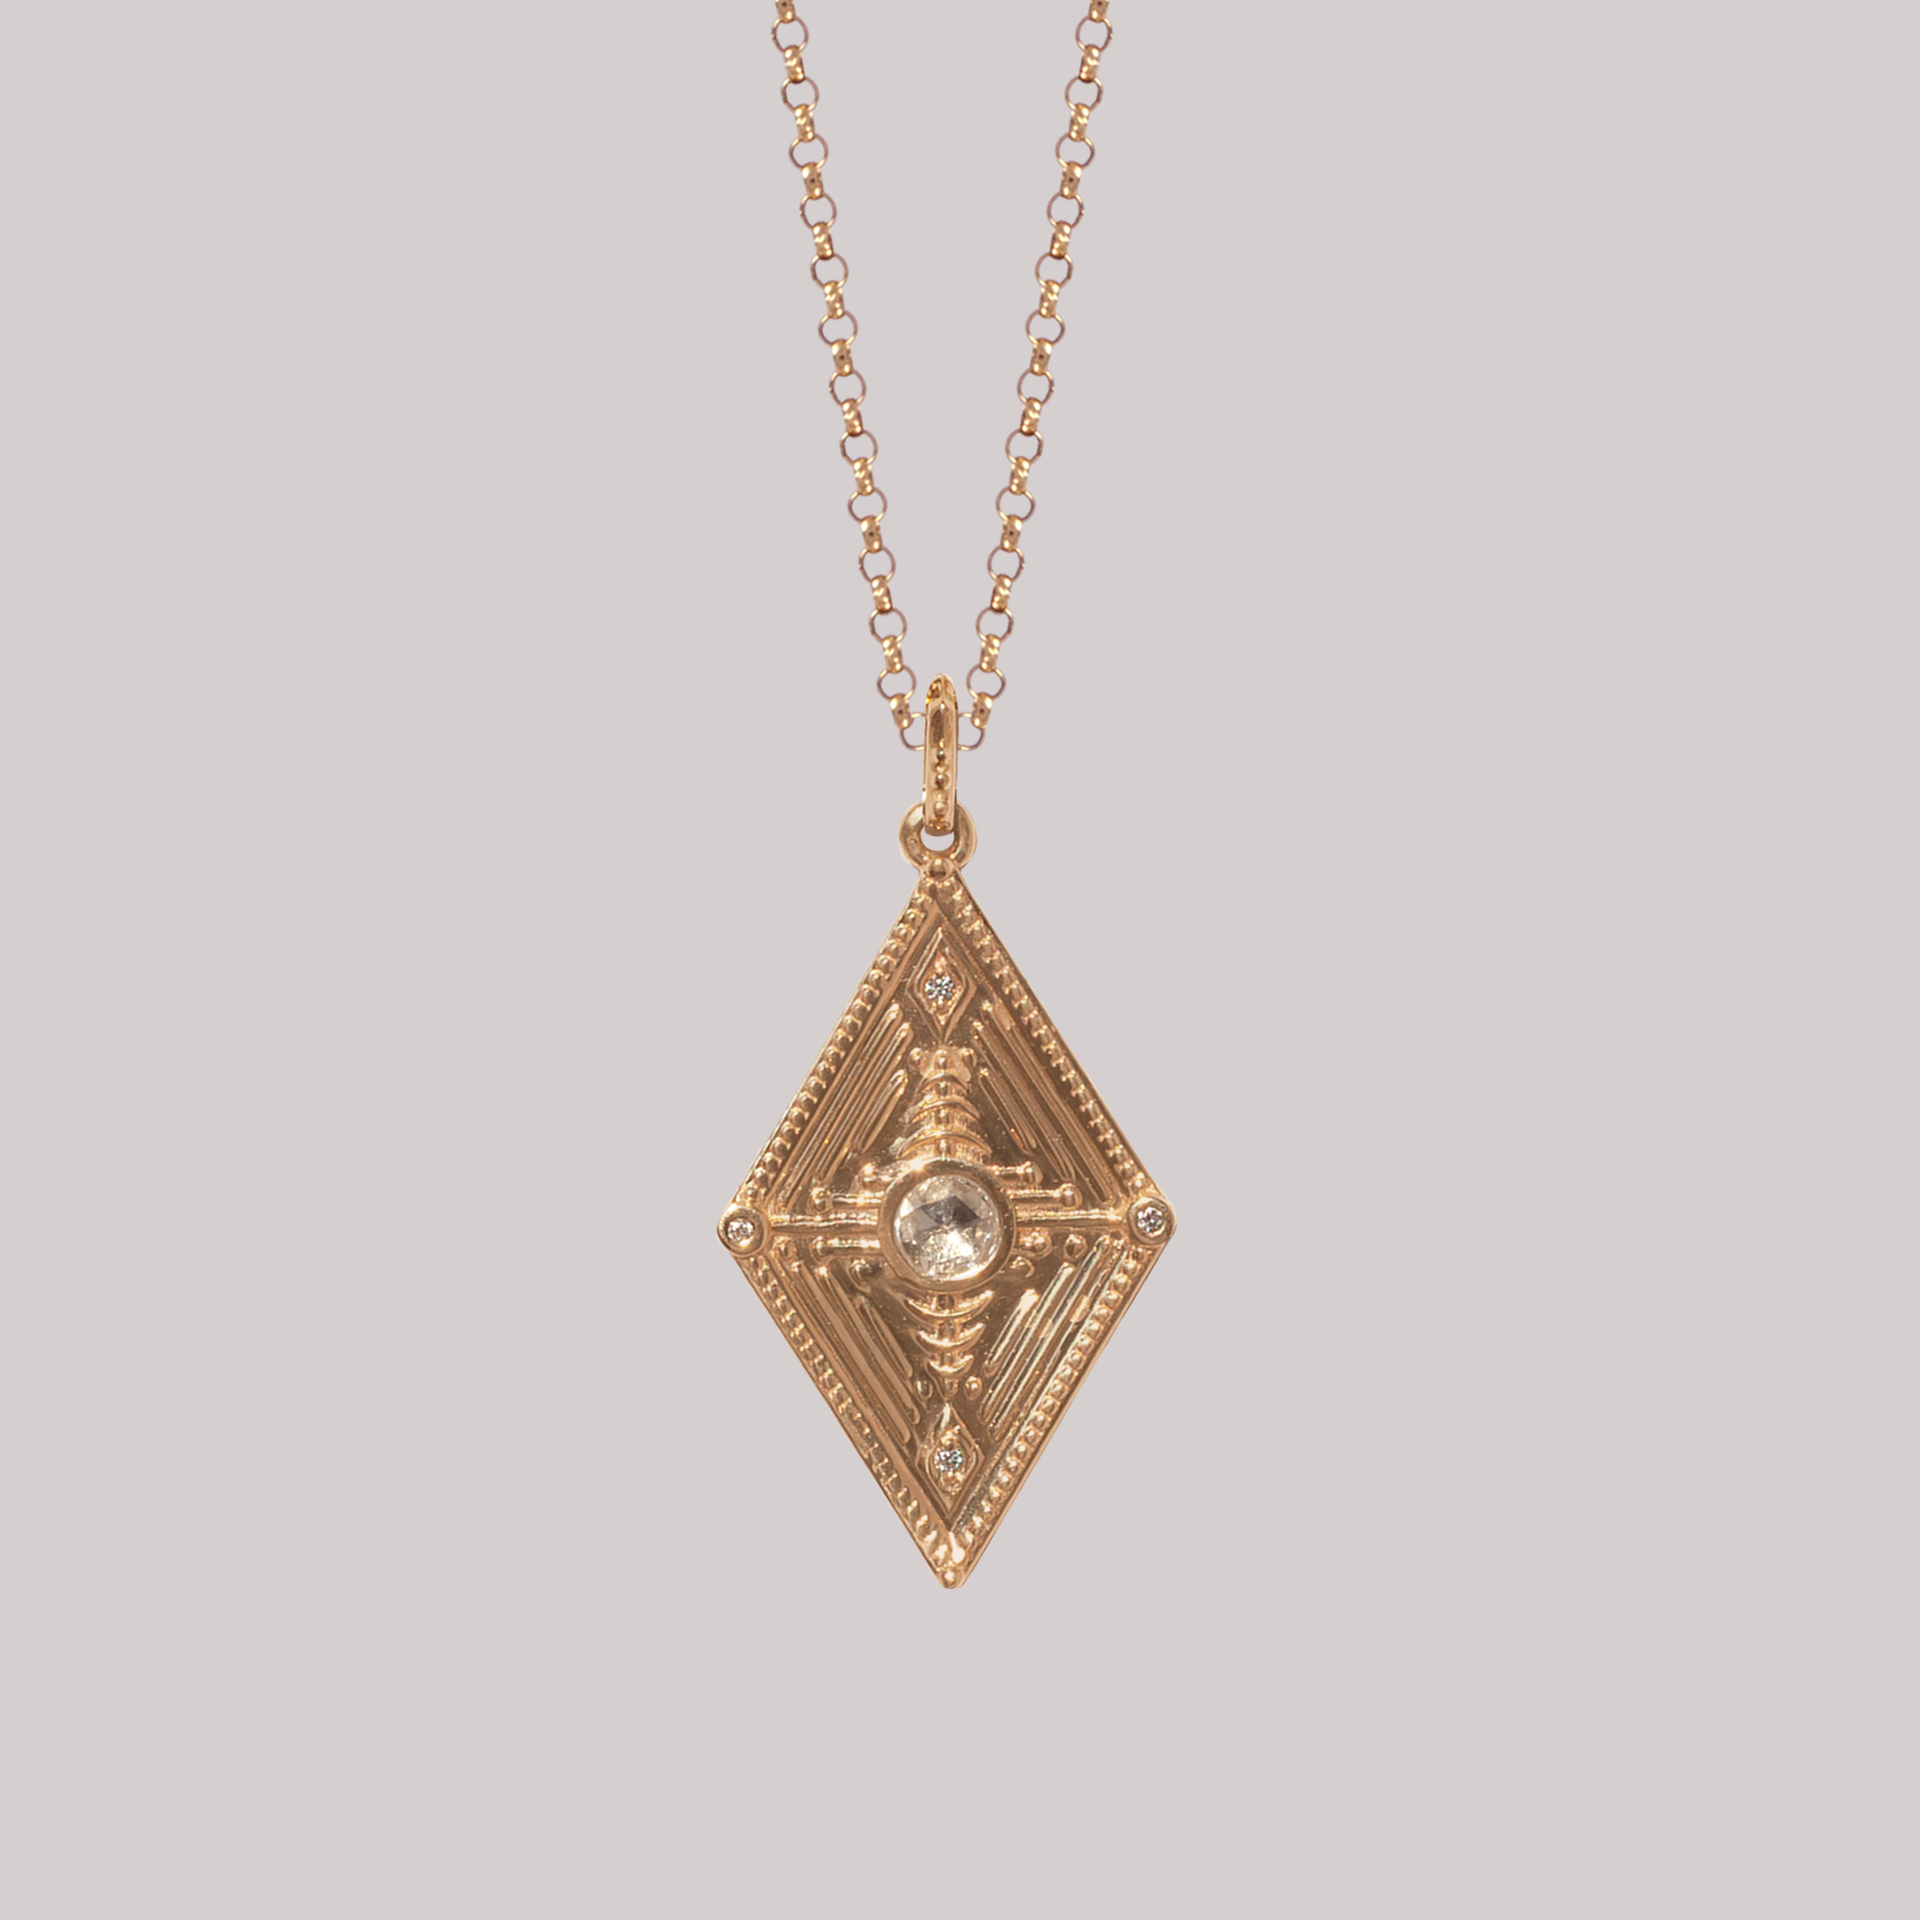 Anastassia Sel Fine Jewelry– Anastassia Sel Jewelry